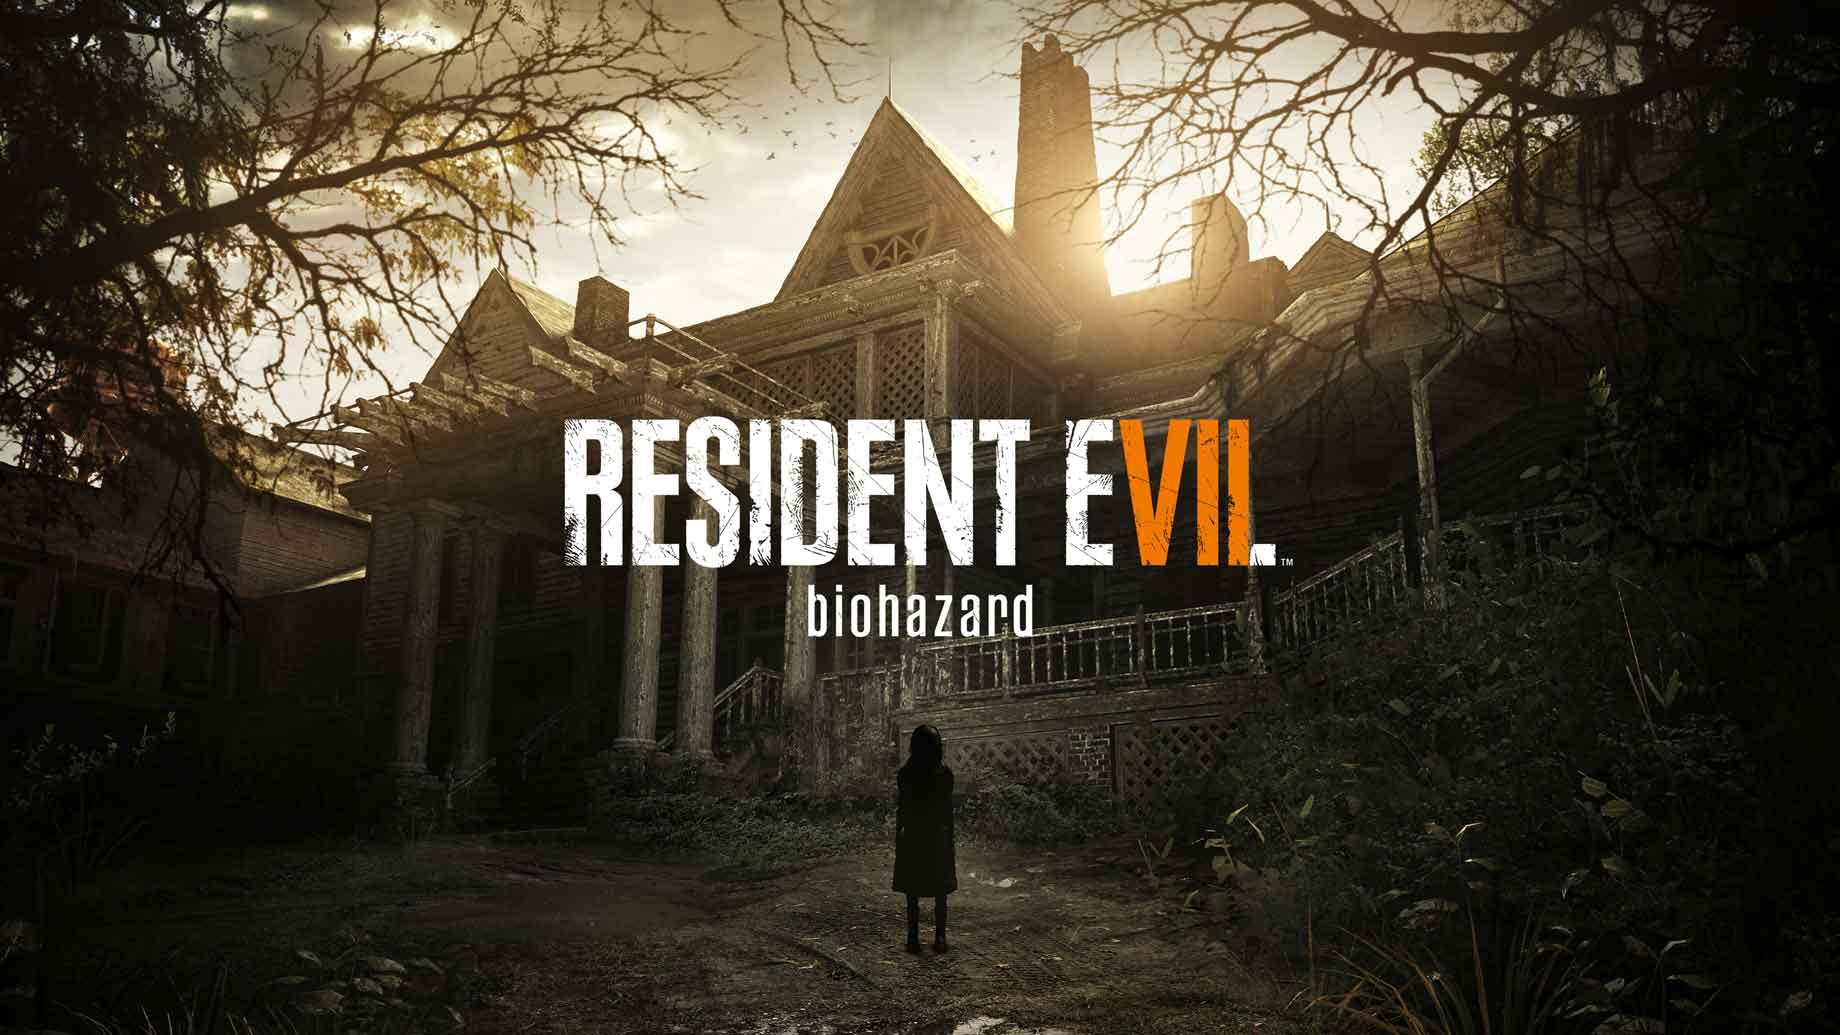 Cartaz de "Resident Evil VII: Biohazard" Créditos da Imagem: Capcom